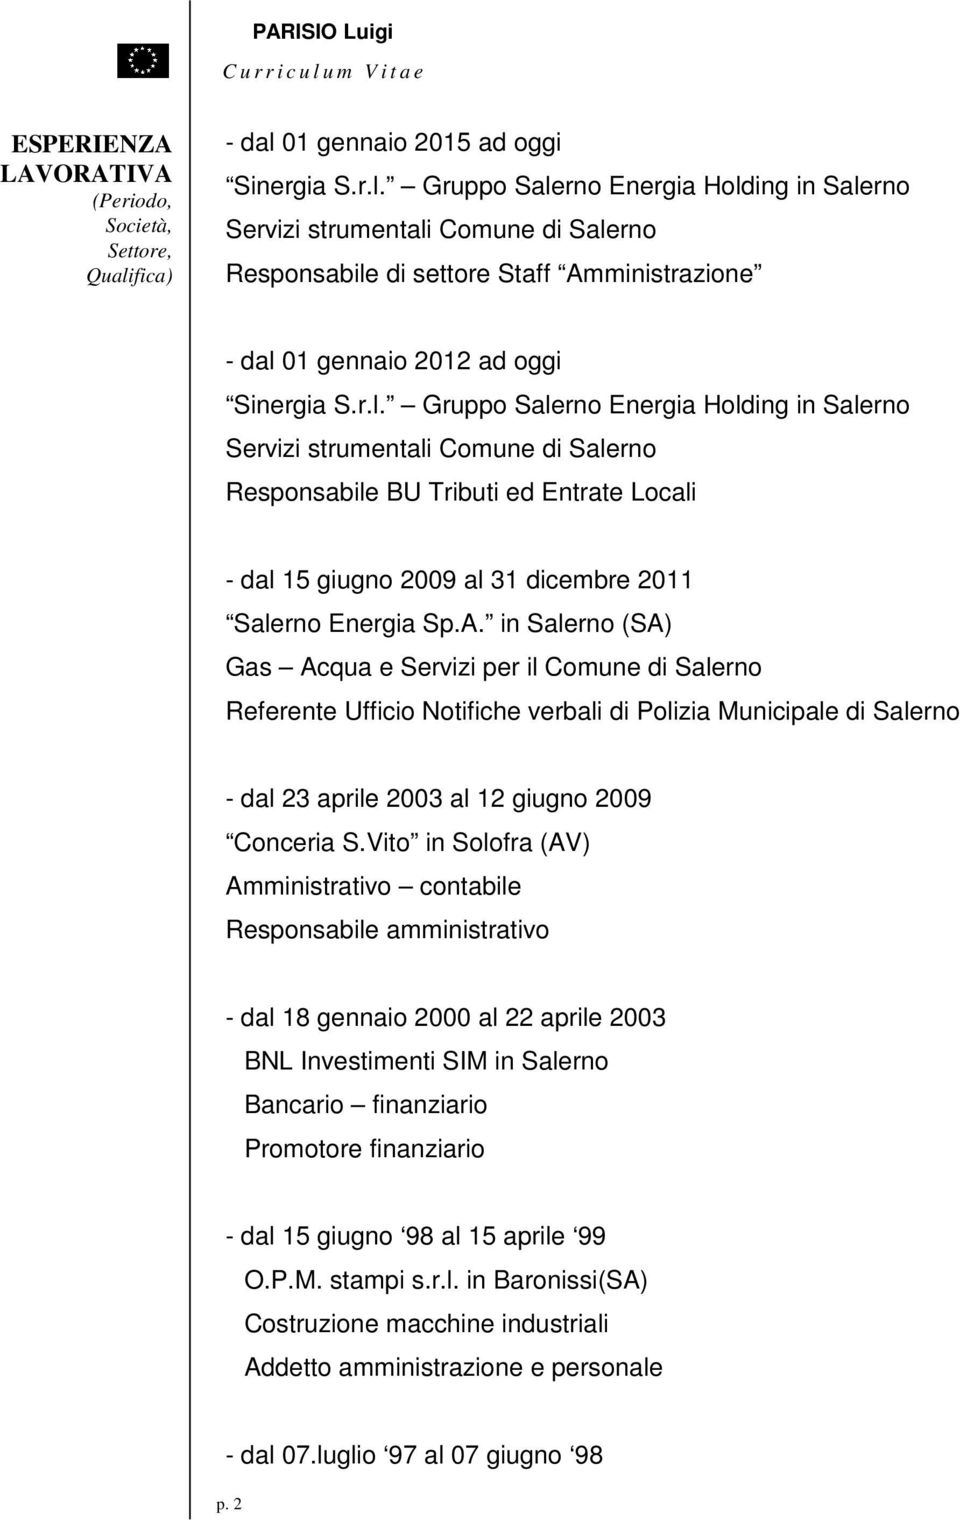 r.l. Gruppo Salerno Energia Holding in Salerno Servizi strumentali Comune di Salerno Responsabile BU Tributi ed Entrate Locali - dal 15 giugno 2009 al 31 dicembre 2011 Salerno Energia Sp.A.